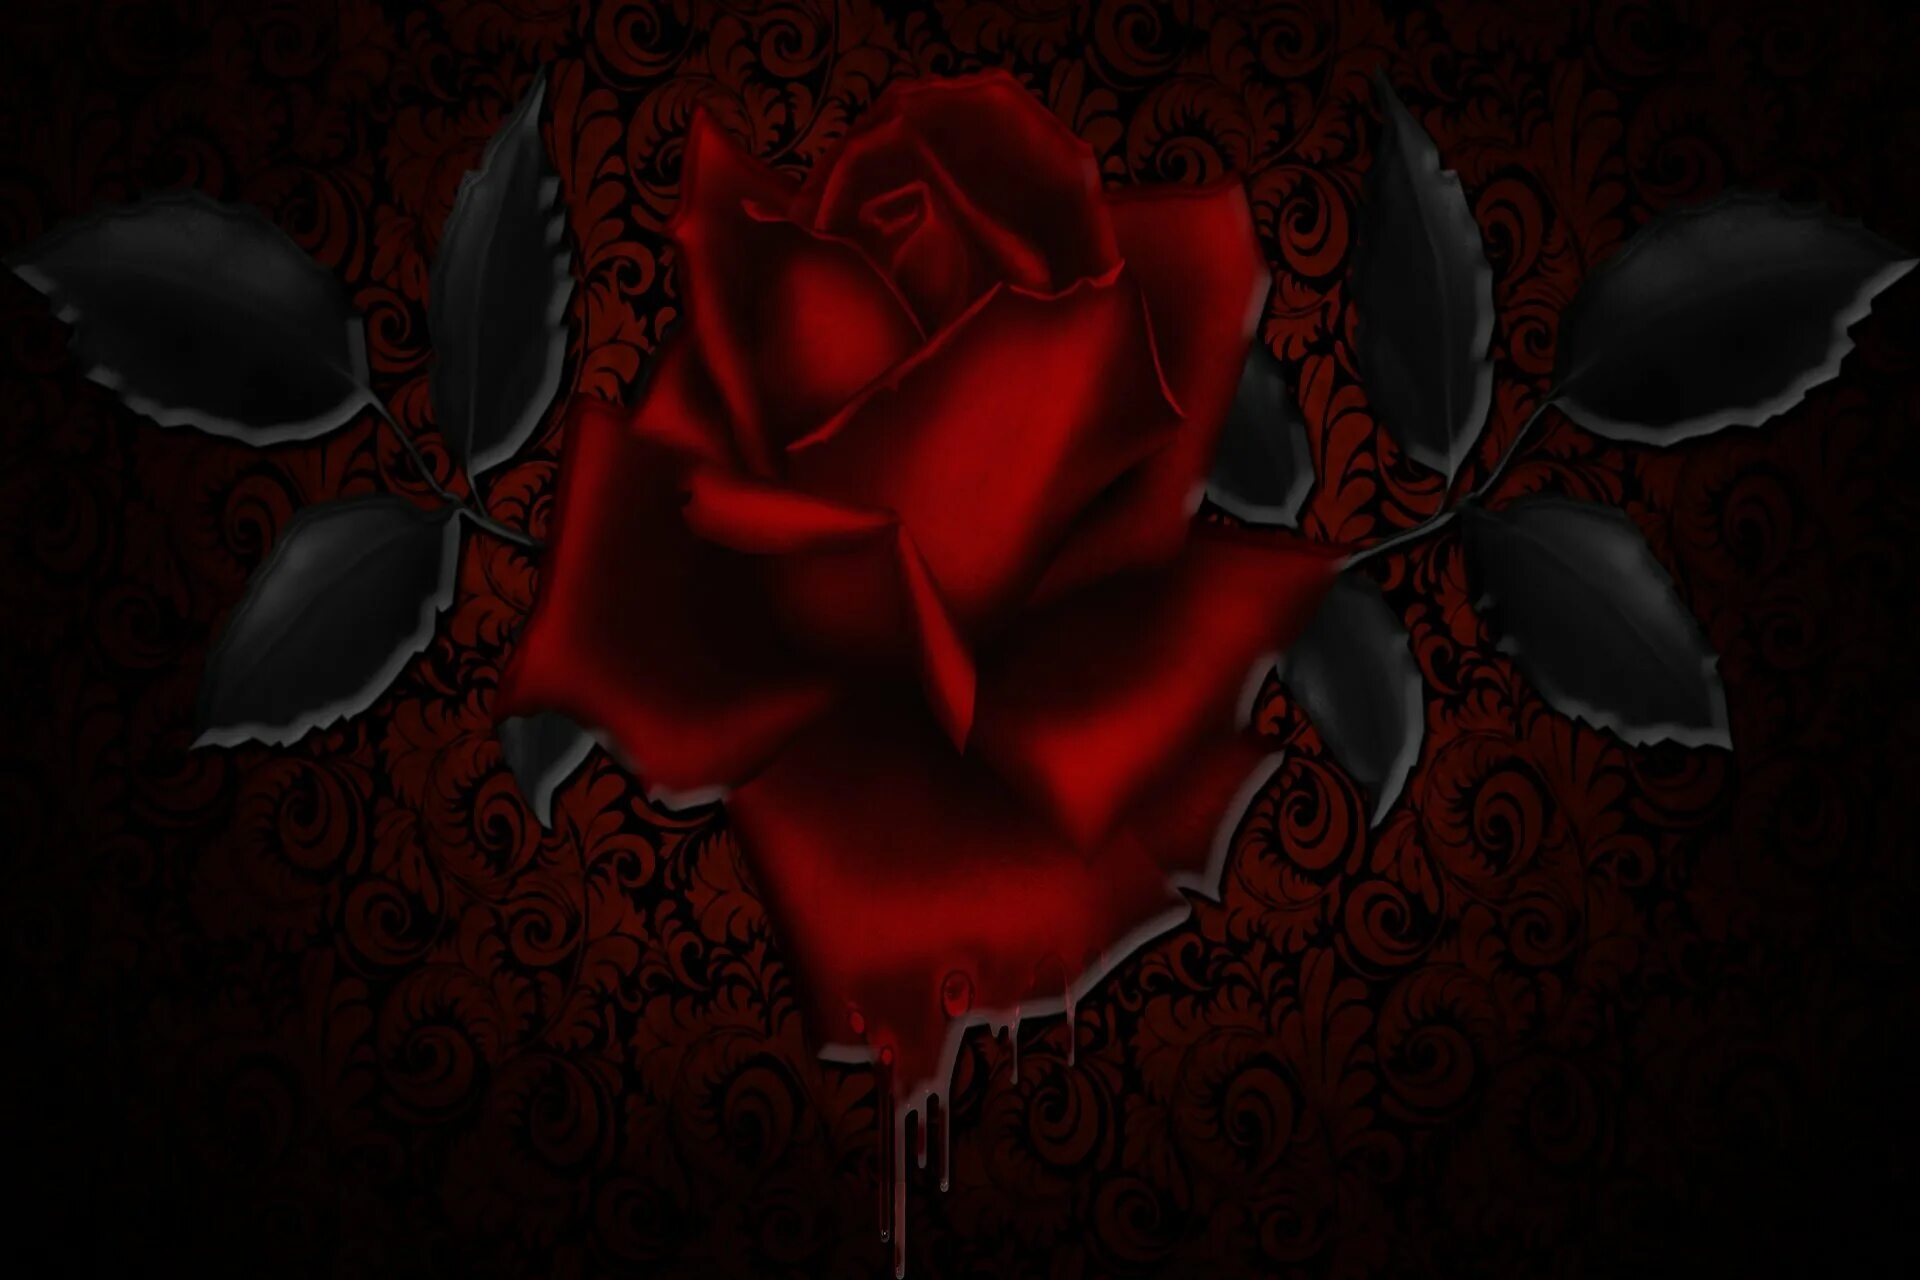 Кроваво красные розы.